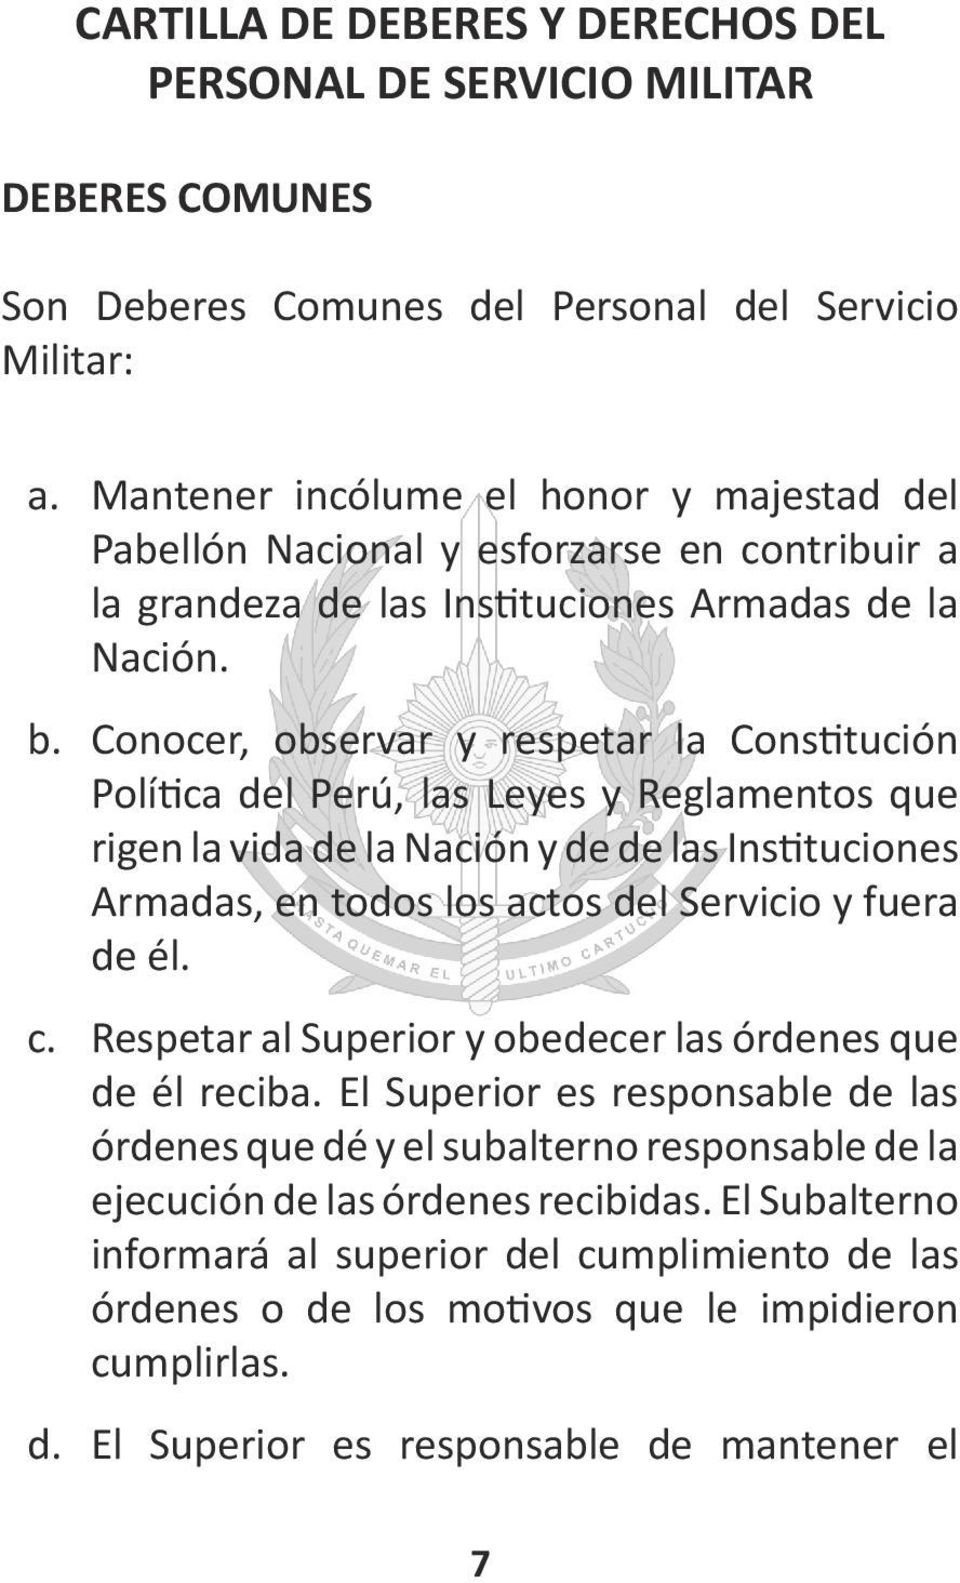 Conocer, observar y respetar la Constitución Política del Perú, las Leyes y Reglamentos que rigen la vida de la Nación y de de las Instituciones Armadas, en todos los actos del Servicio y fuera de él.